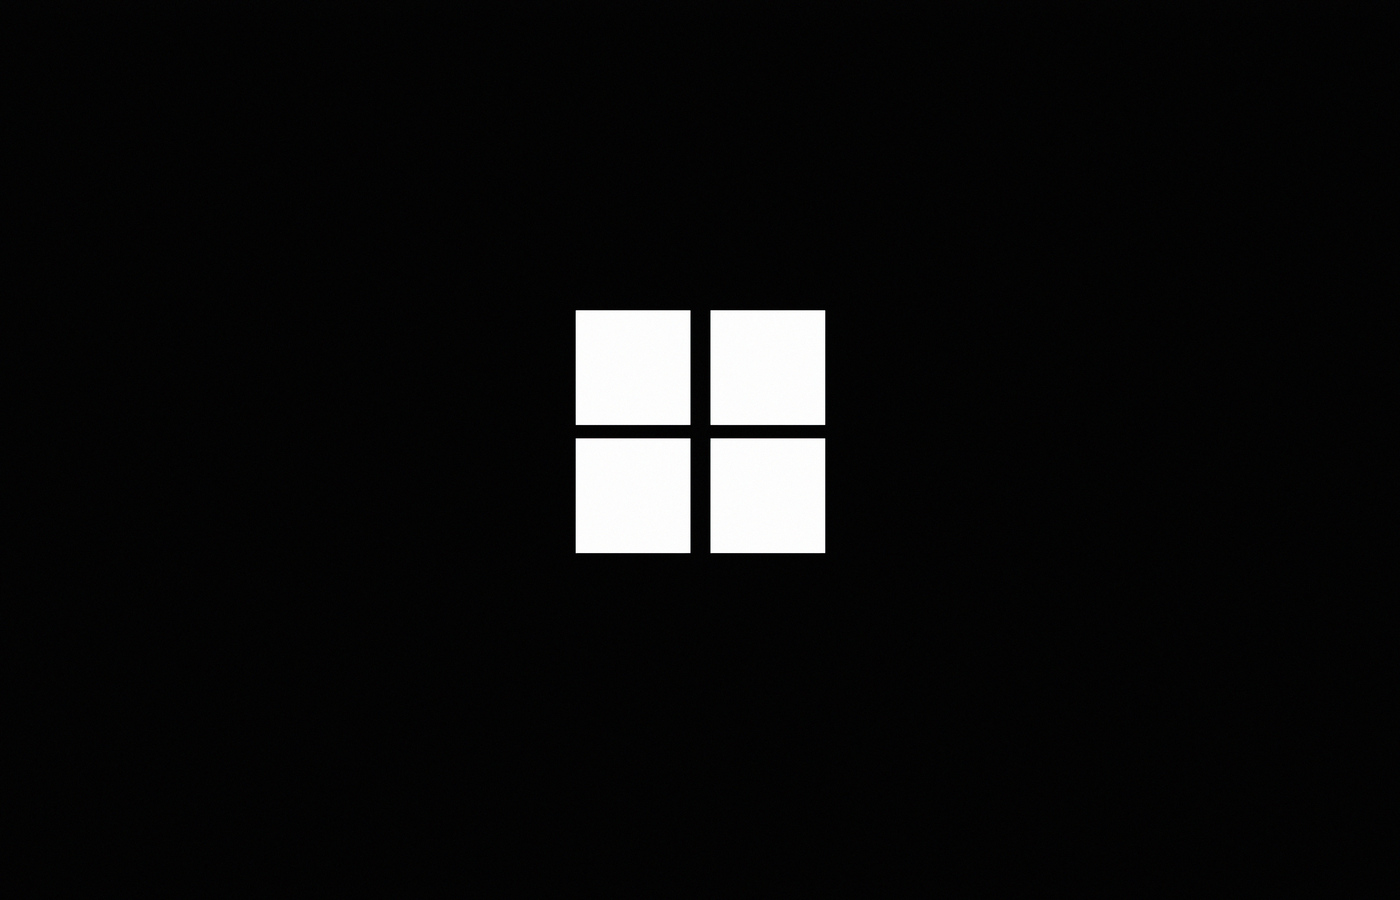 1400x900 Minimalistic Windows Logo Black 4k 1400x900 Resolution HD 4k ...